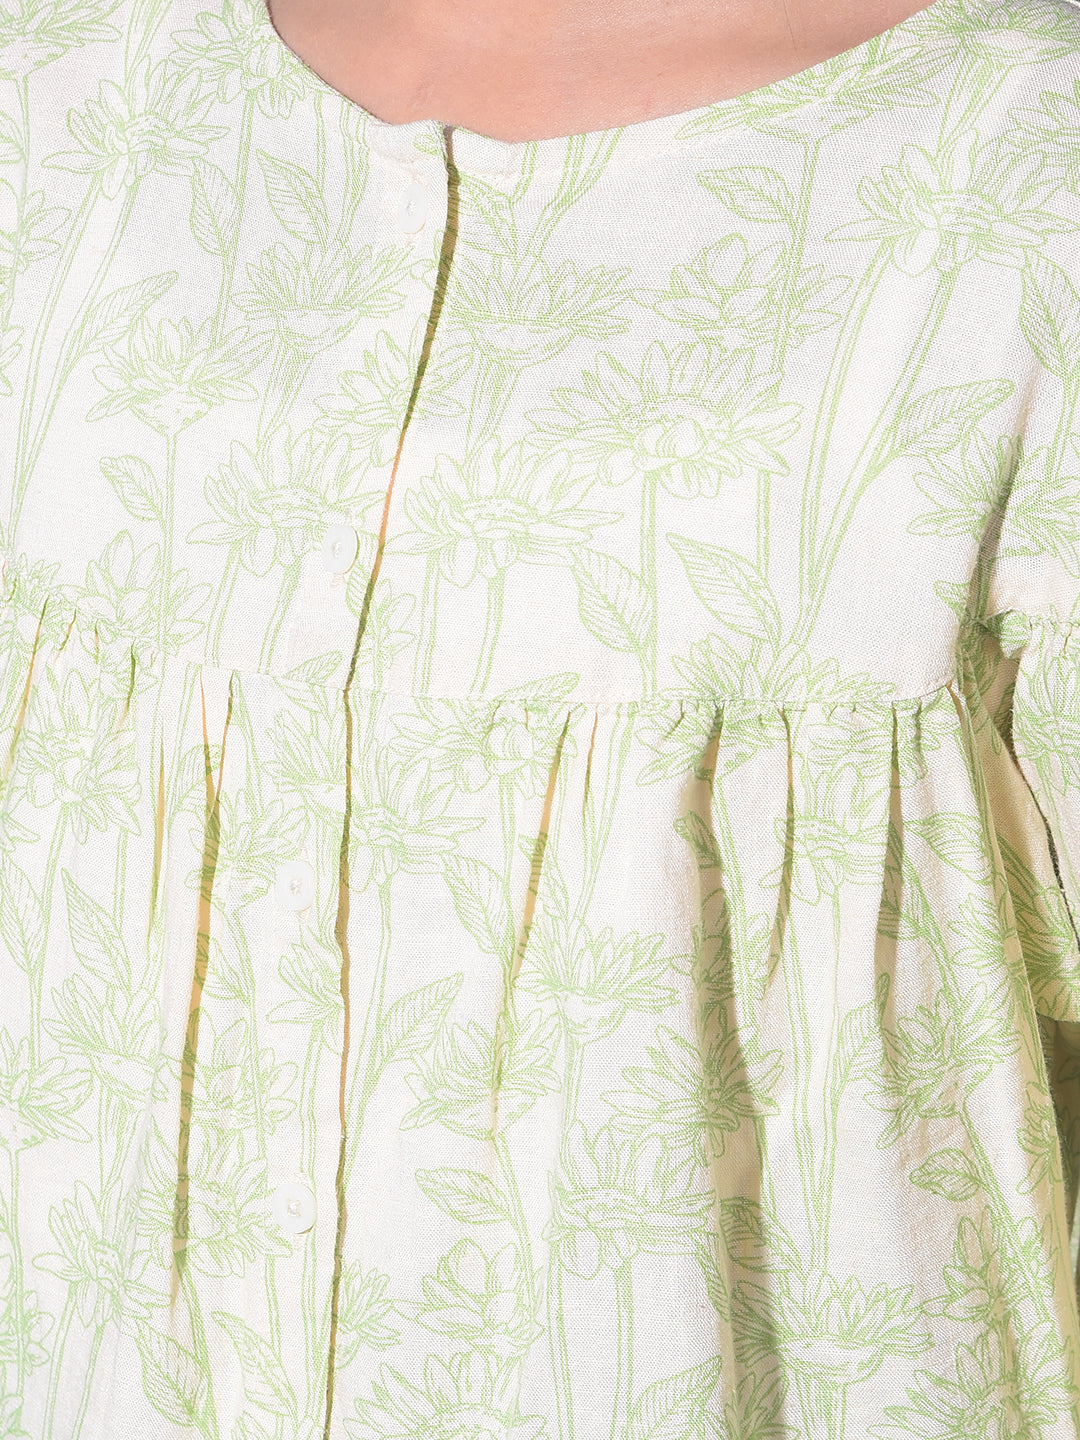 Green Floral Print Linen Top-Girls Tops-Crimsoune Club